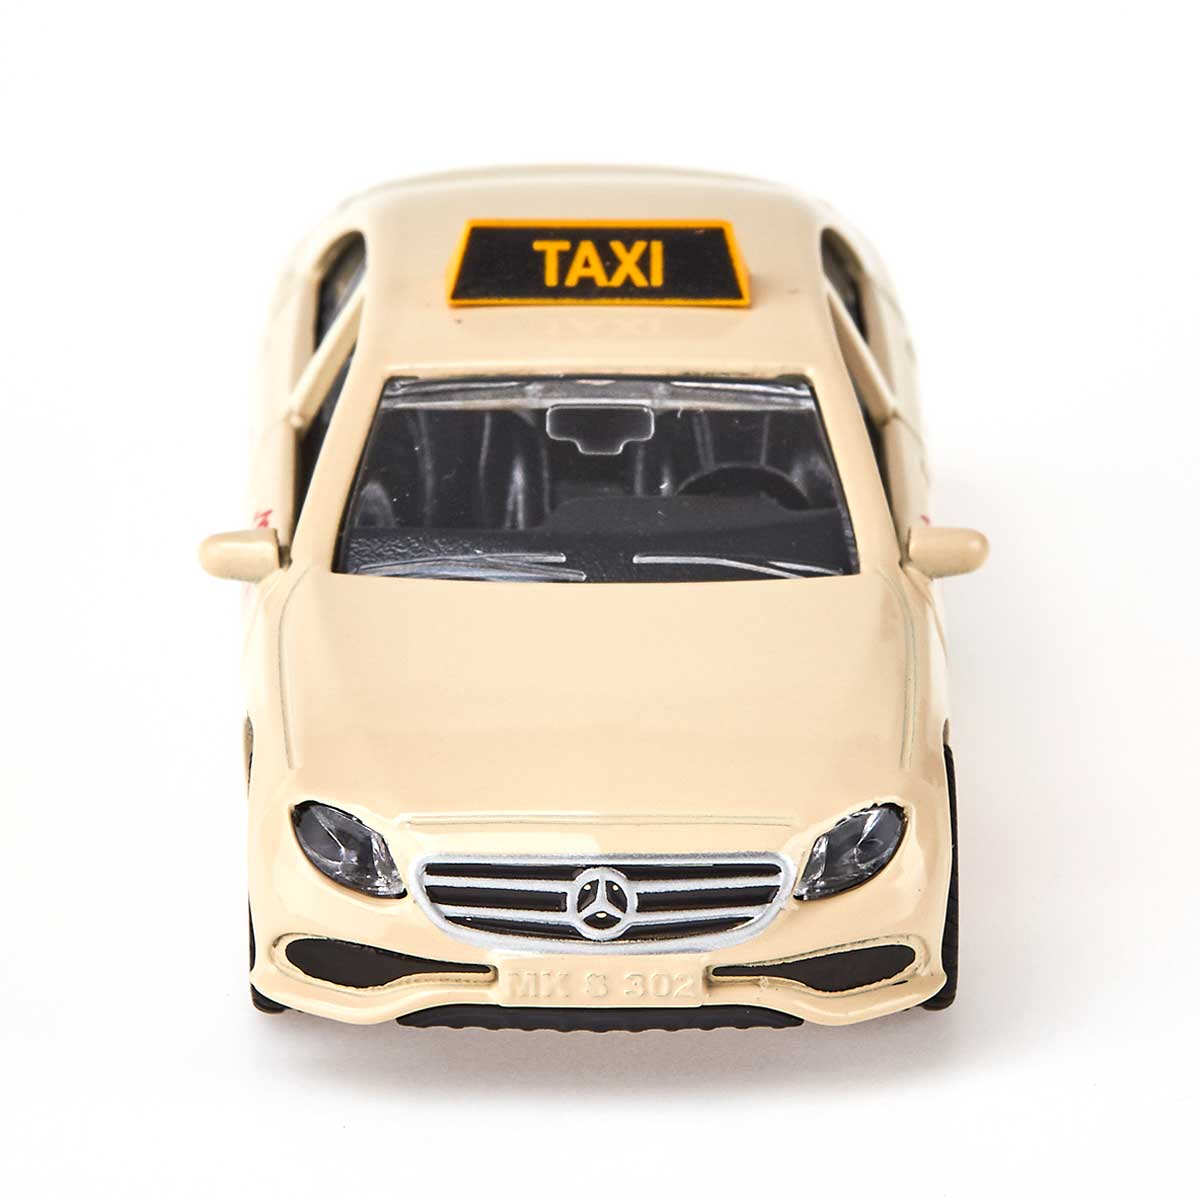 メルセデス・ベンツ タクシー: ボーネルンド オンラインショップ。世界中の知育玩具など、あそび道具がたくさん。0歳からのお子様へのプレゼントにも。